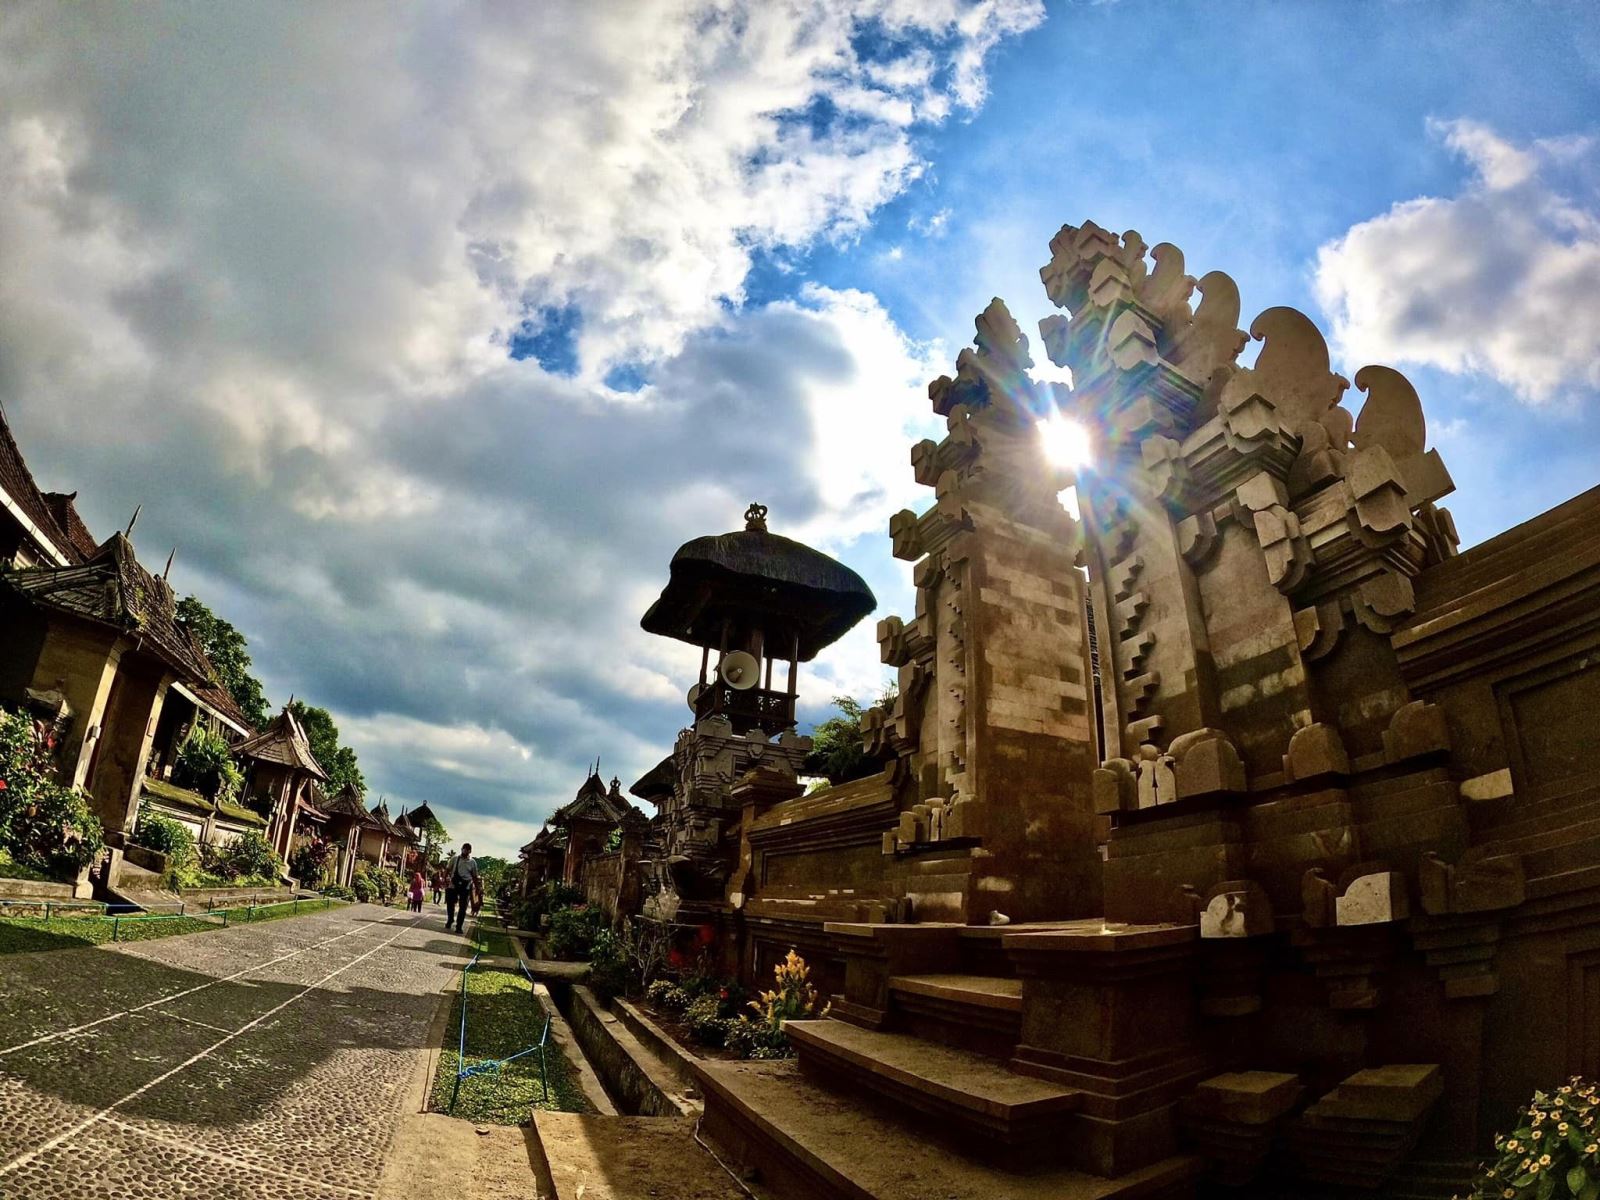 Người dân ở Bali chủ yếu theo Hindu Giáo và rất thân thiện, dễ mến